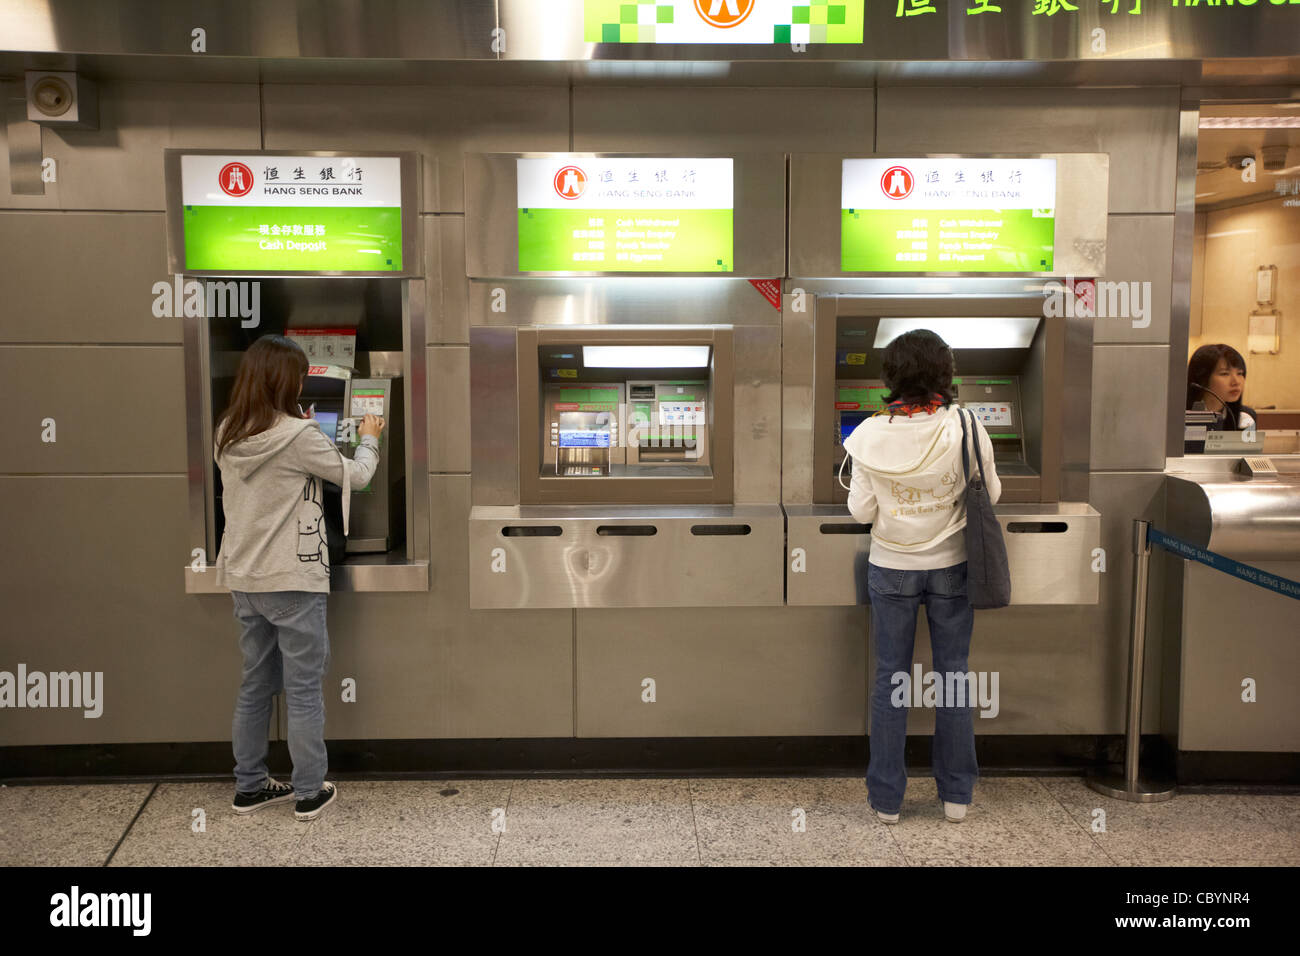 Les femmes chinoises à l'aide de Hang Seng Bank distributeur automatique de guichets automatiques bancaires à Hong Kong Hong Kong Chine Asie Banque D'Images